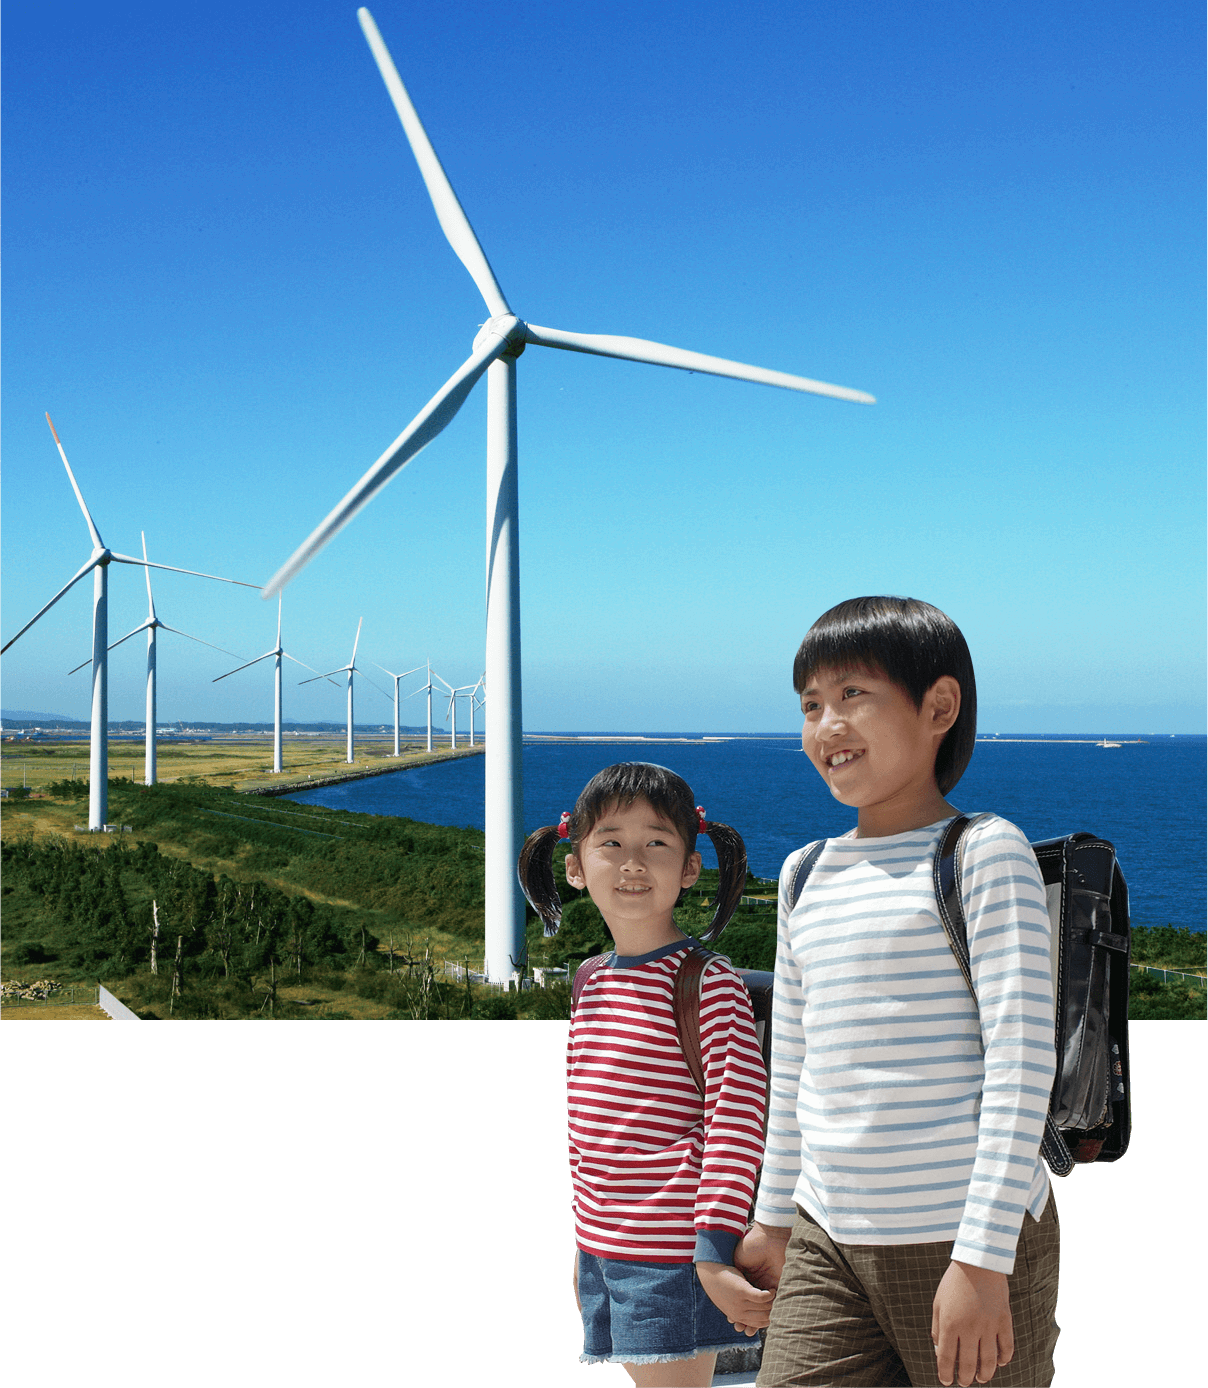 响滩风力发电设施